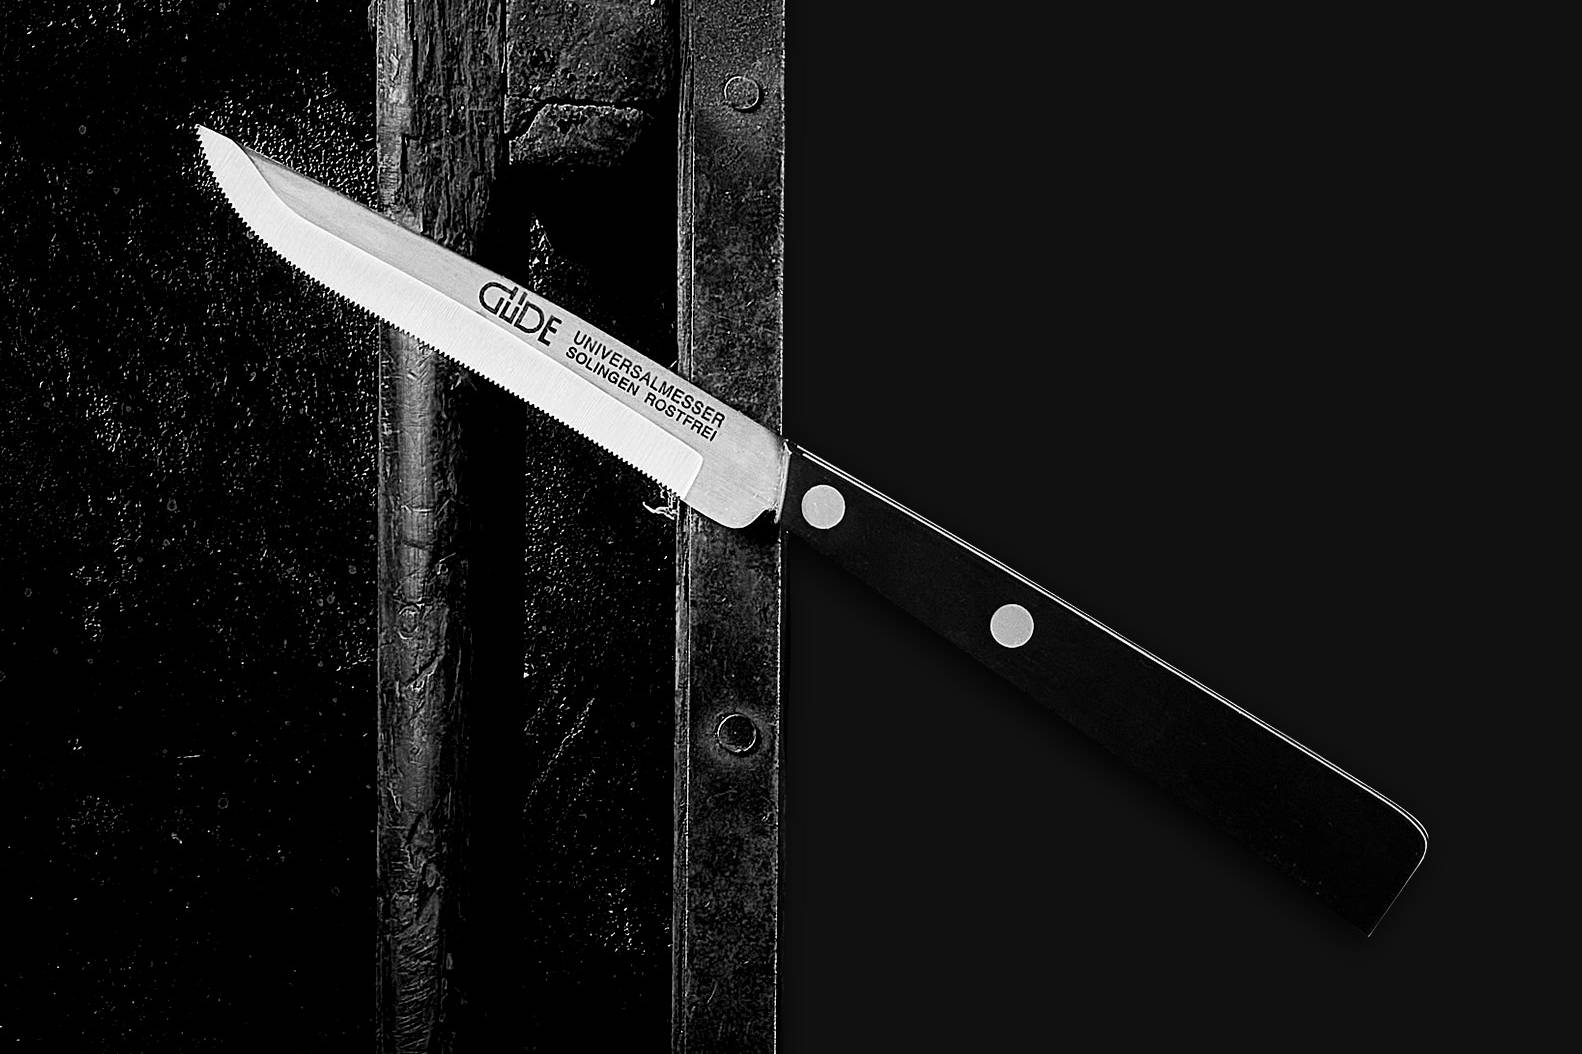 Coltelli Solingen, Güde coltelli, coltelli da cuoco Solingen, set di coltelli, acciaio per affilare, coltelli solinger